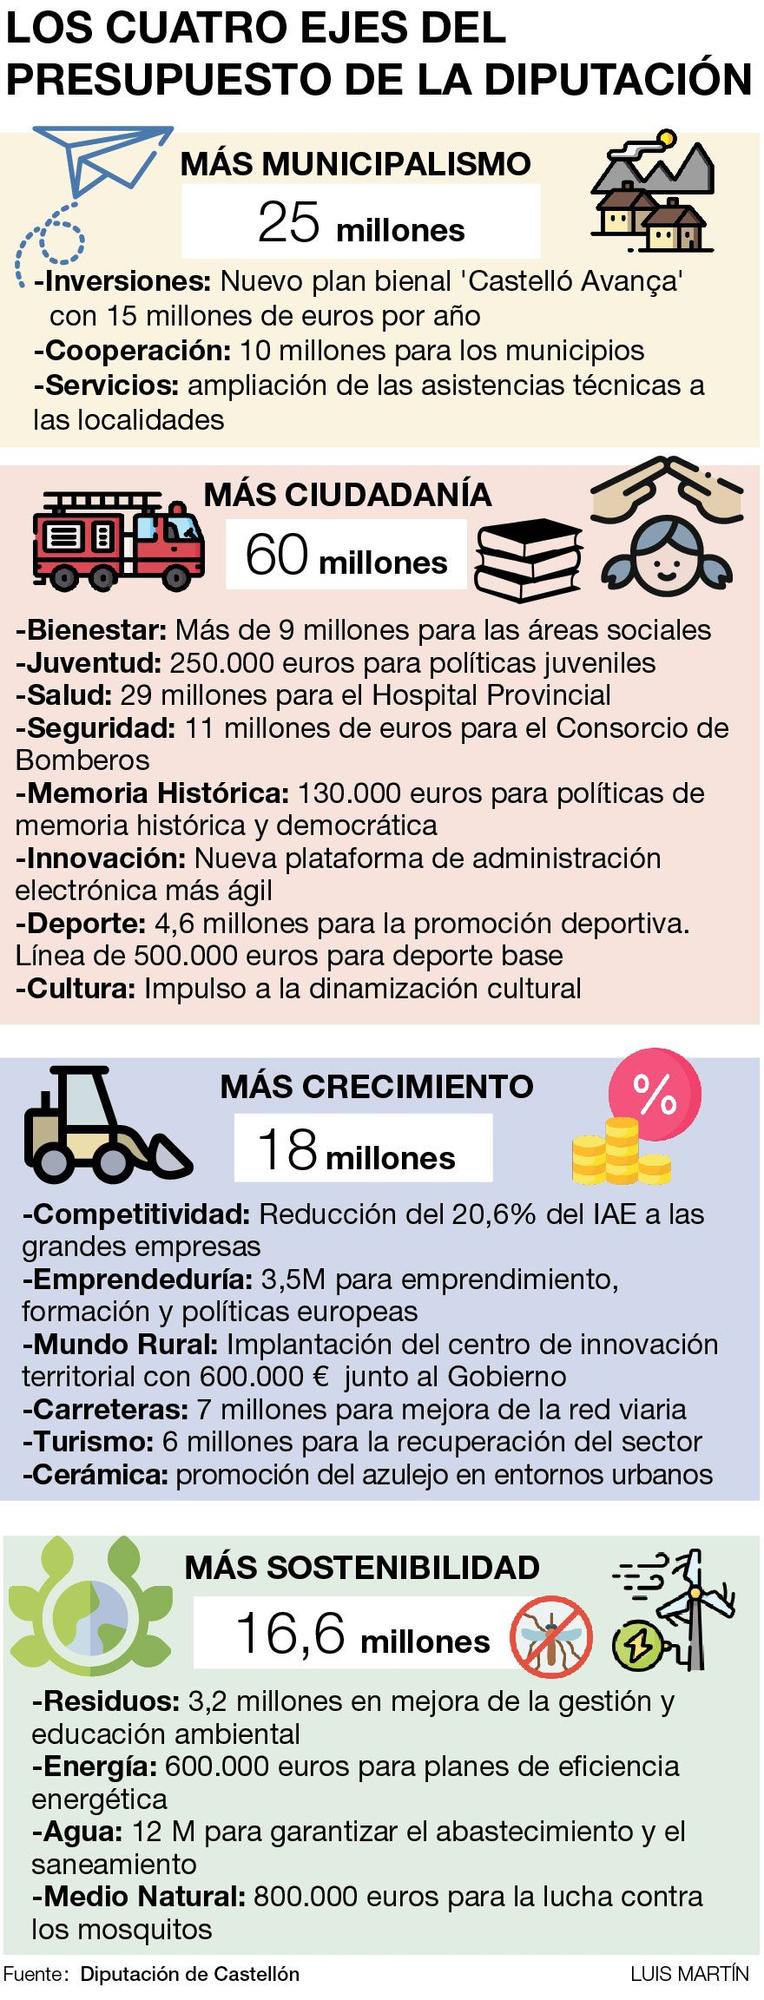 Los cuatro ejes del presupuesto de la Diputación de Castellón del 2022